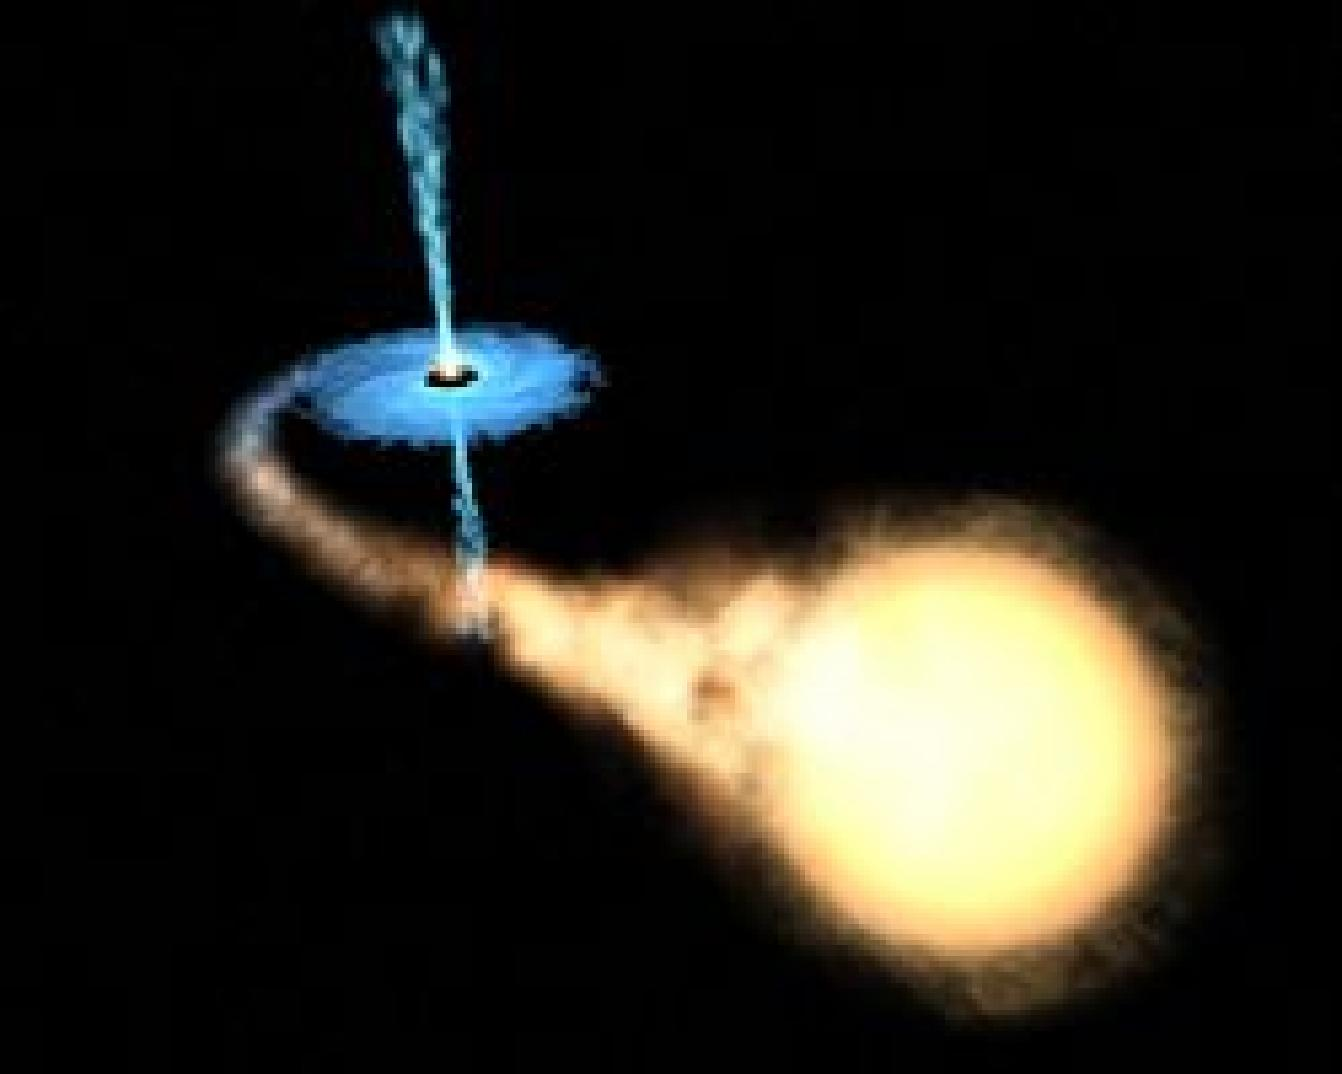 Agujero negro 40 Simulación de la distorsión de la luz producida por un agujero negro de 10Msol con la vía Láctea al fondo.